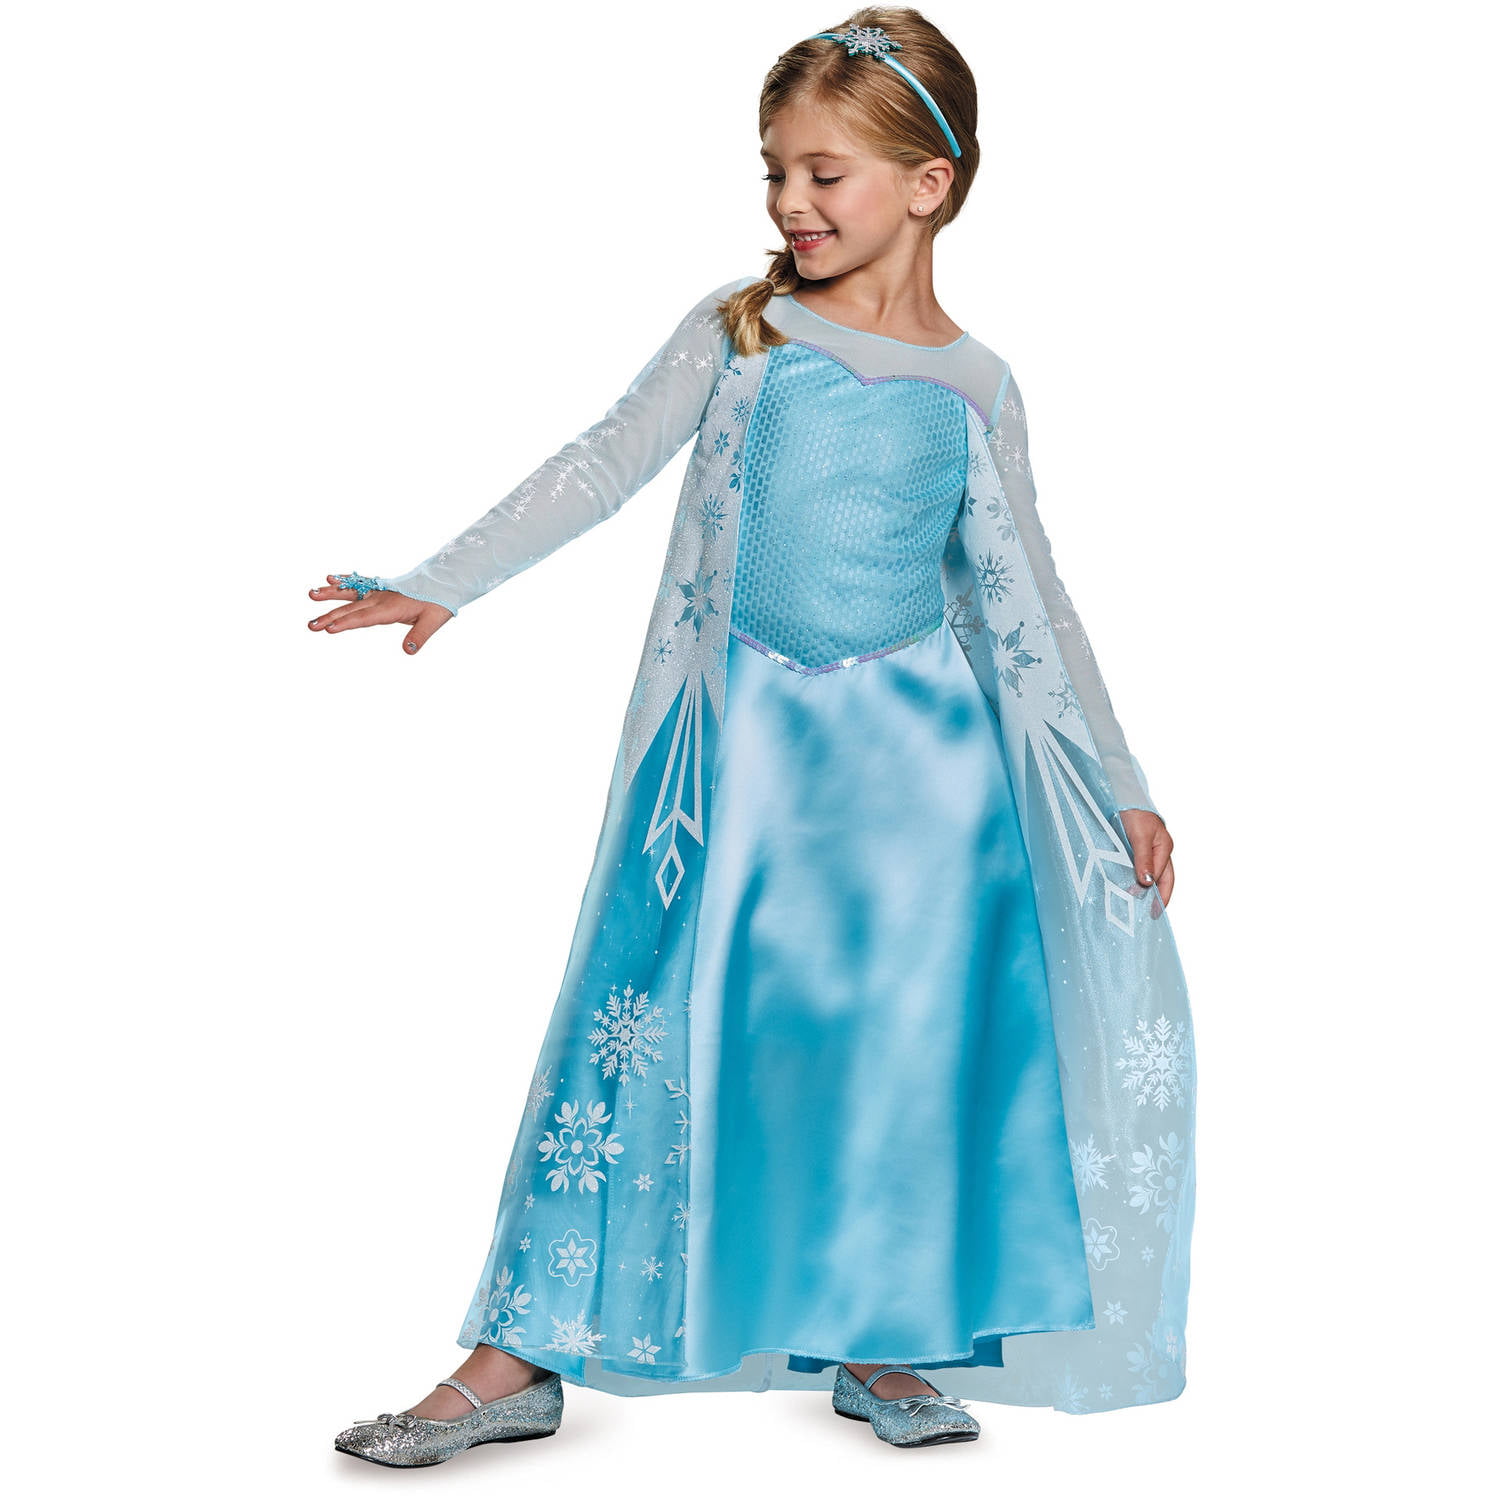 Disney Frozen Elsa Deluxe Child Halloween Costume - Walmart.com ...